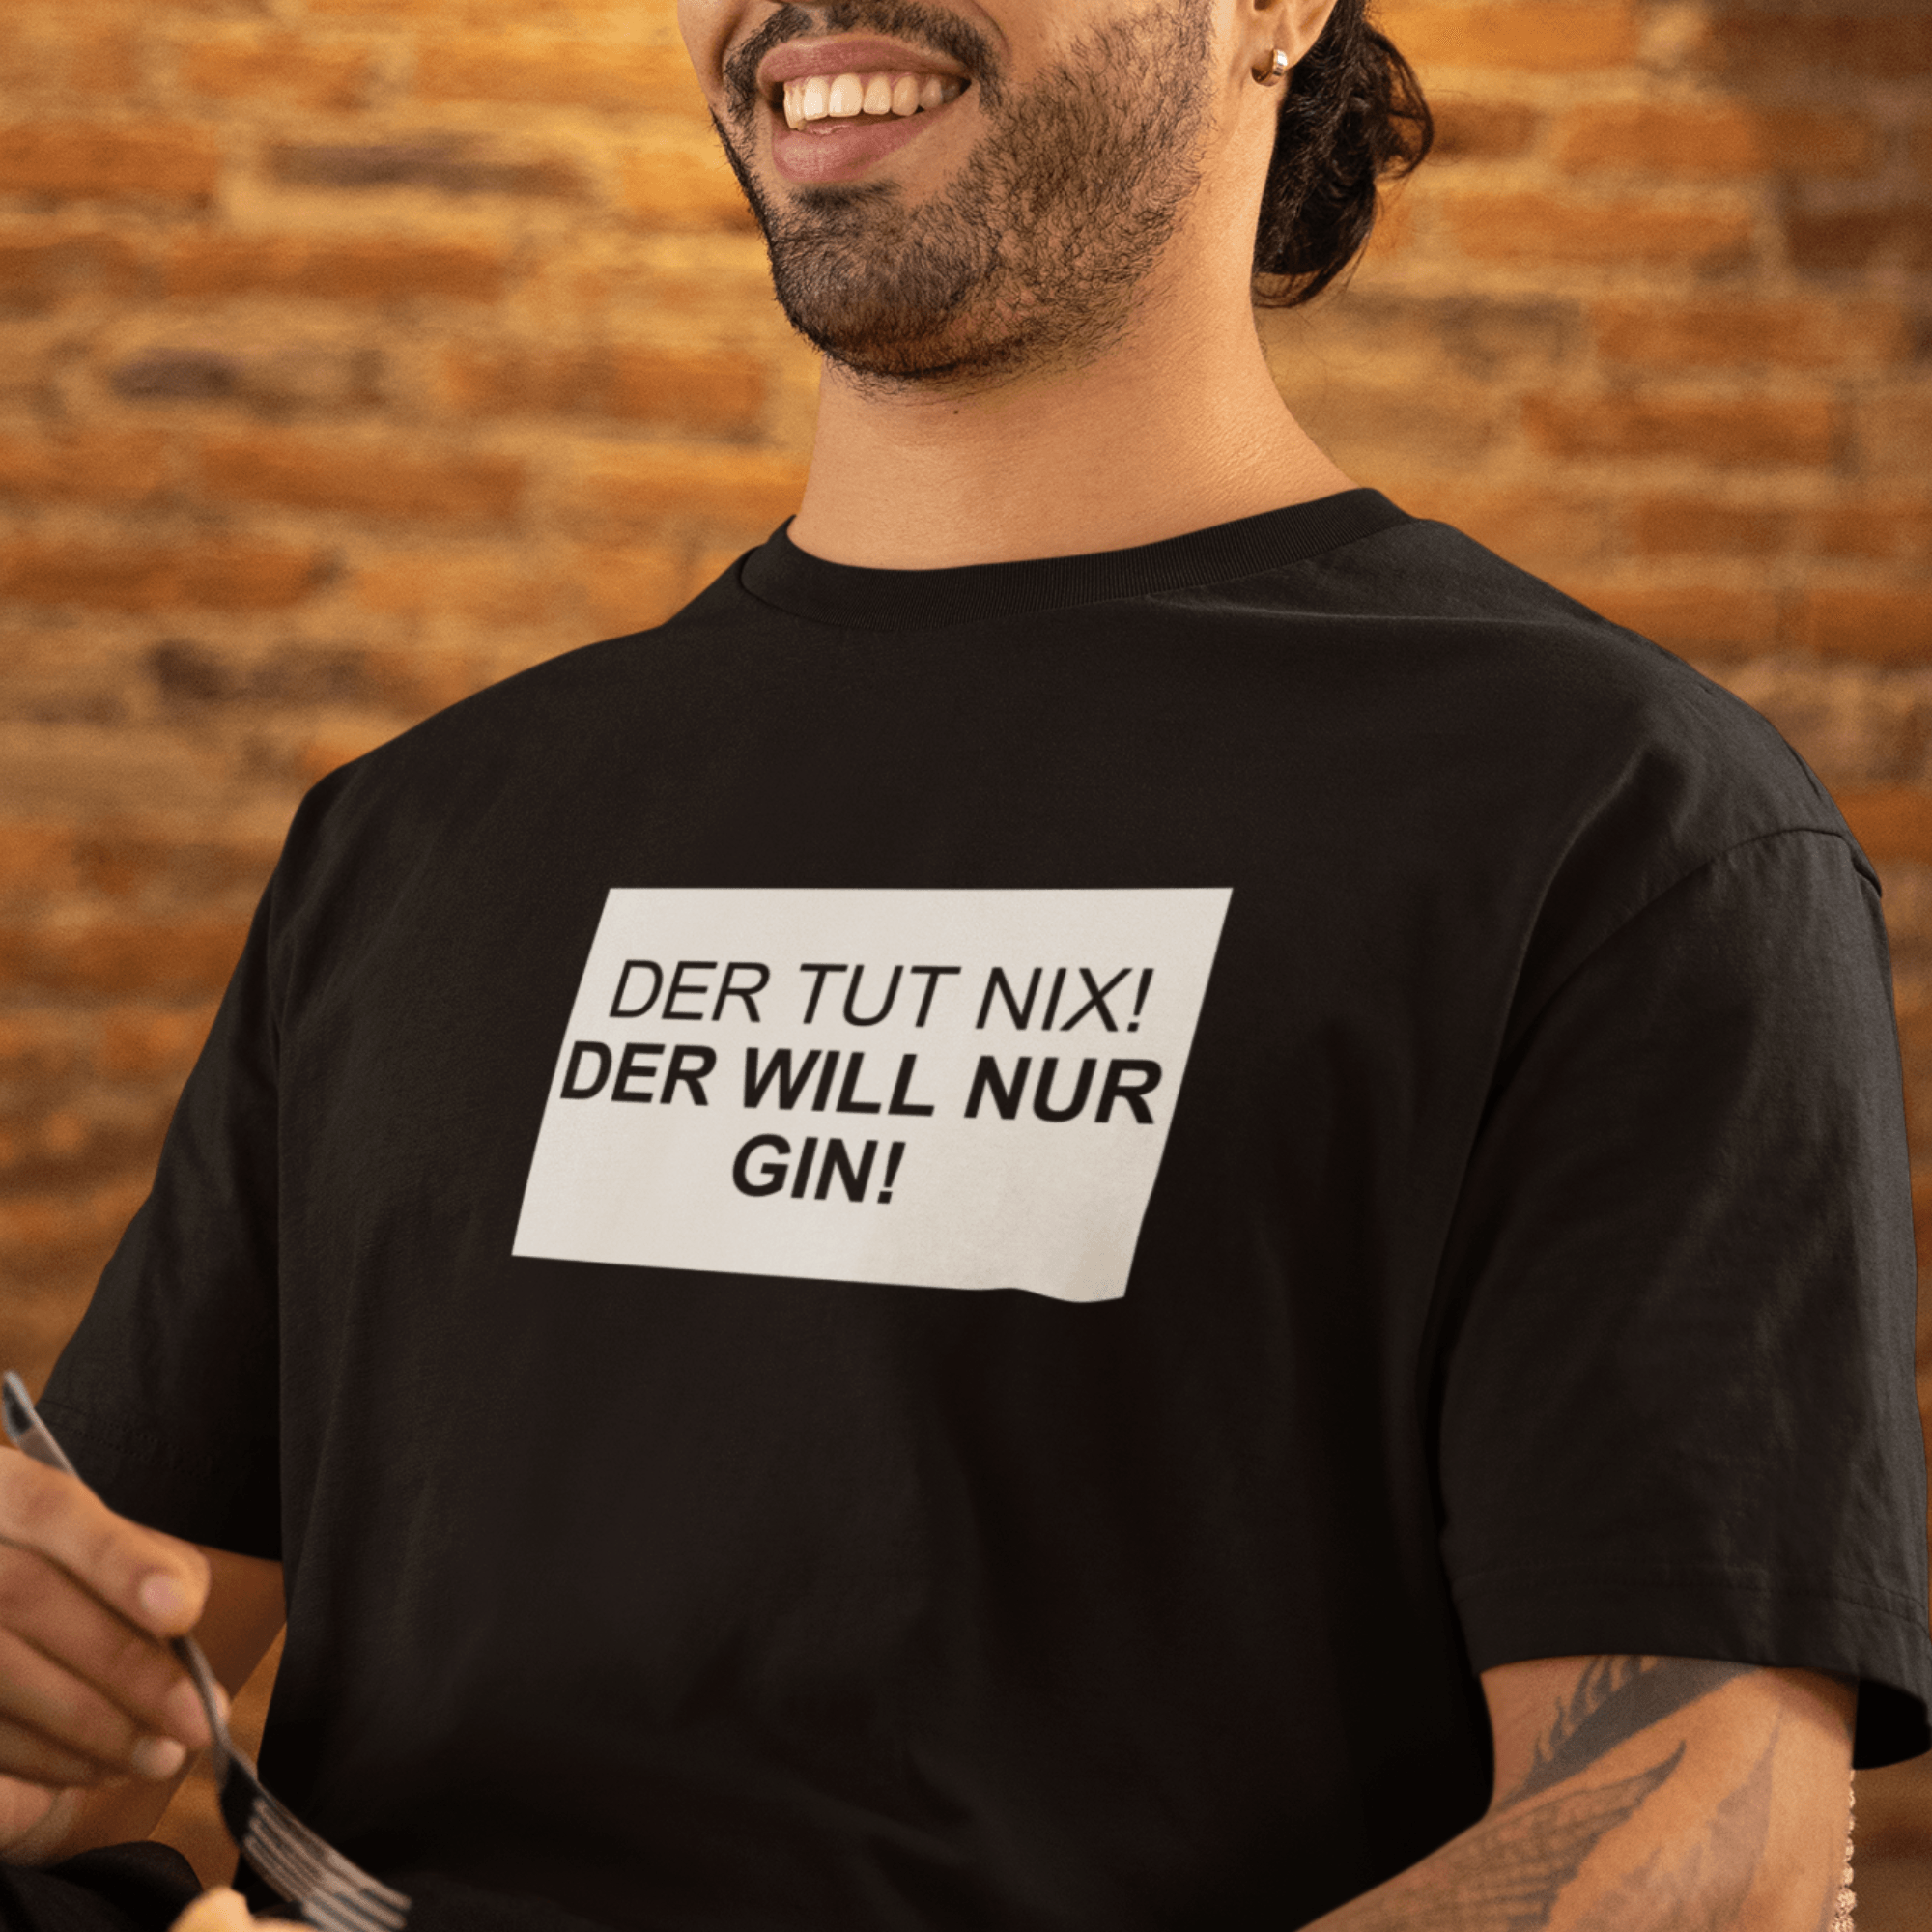 DER TUT NIX! GIN - Organic Relaxed Shirt - einschenken24.de